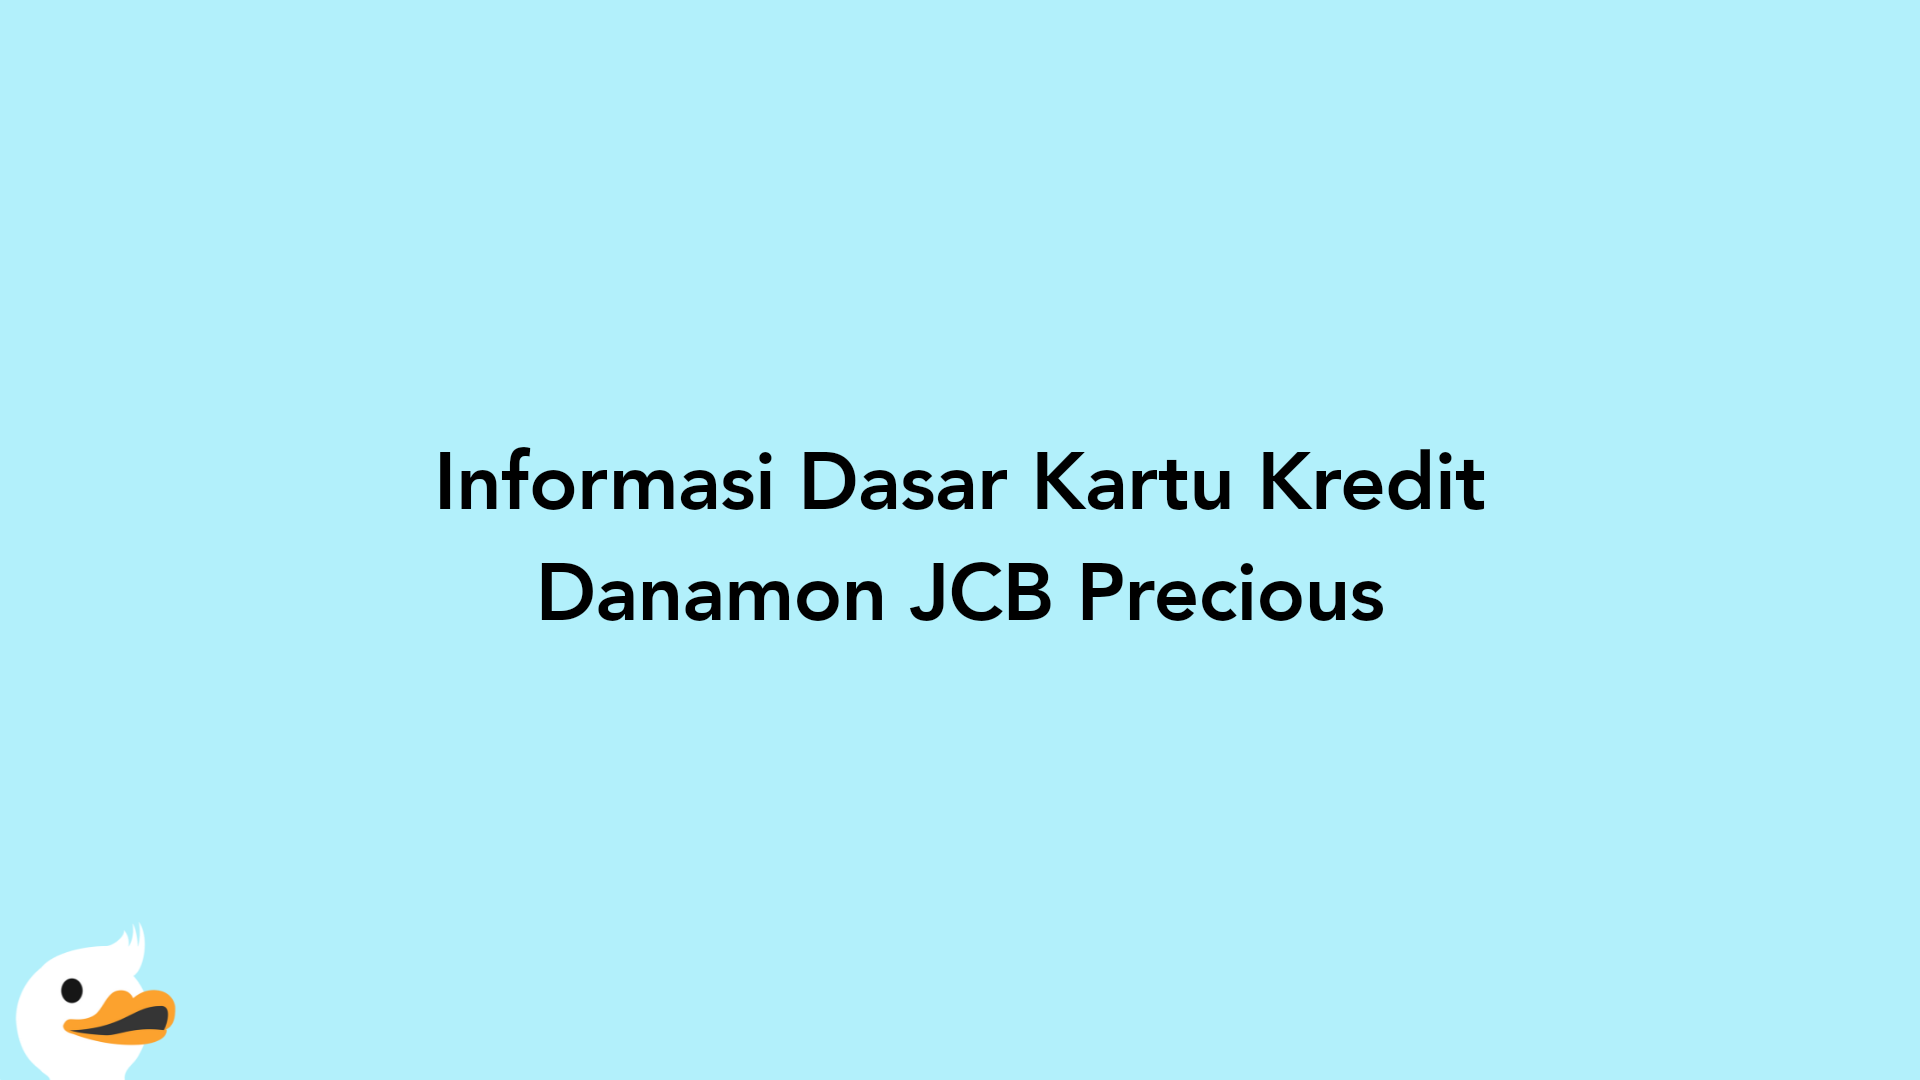 Informasi Dasar Kartu Kredit Danamon JCB Precious